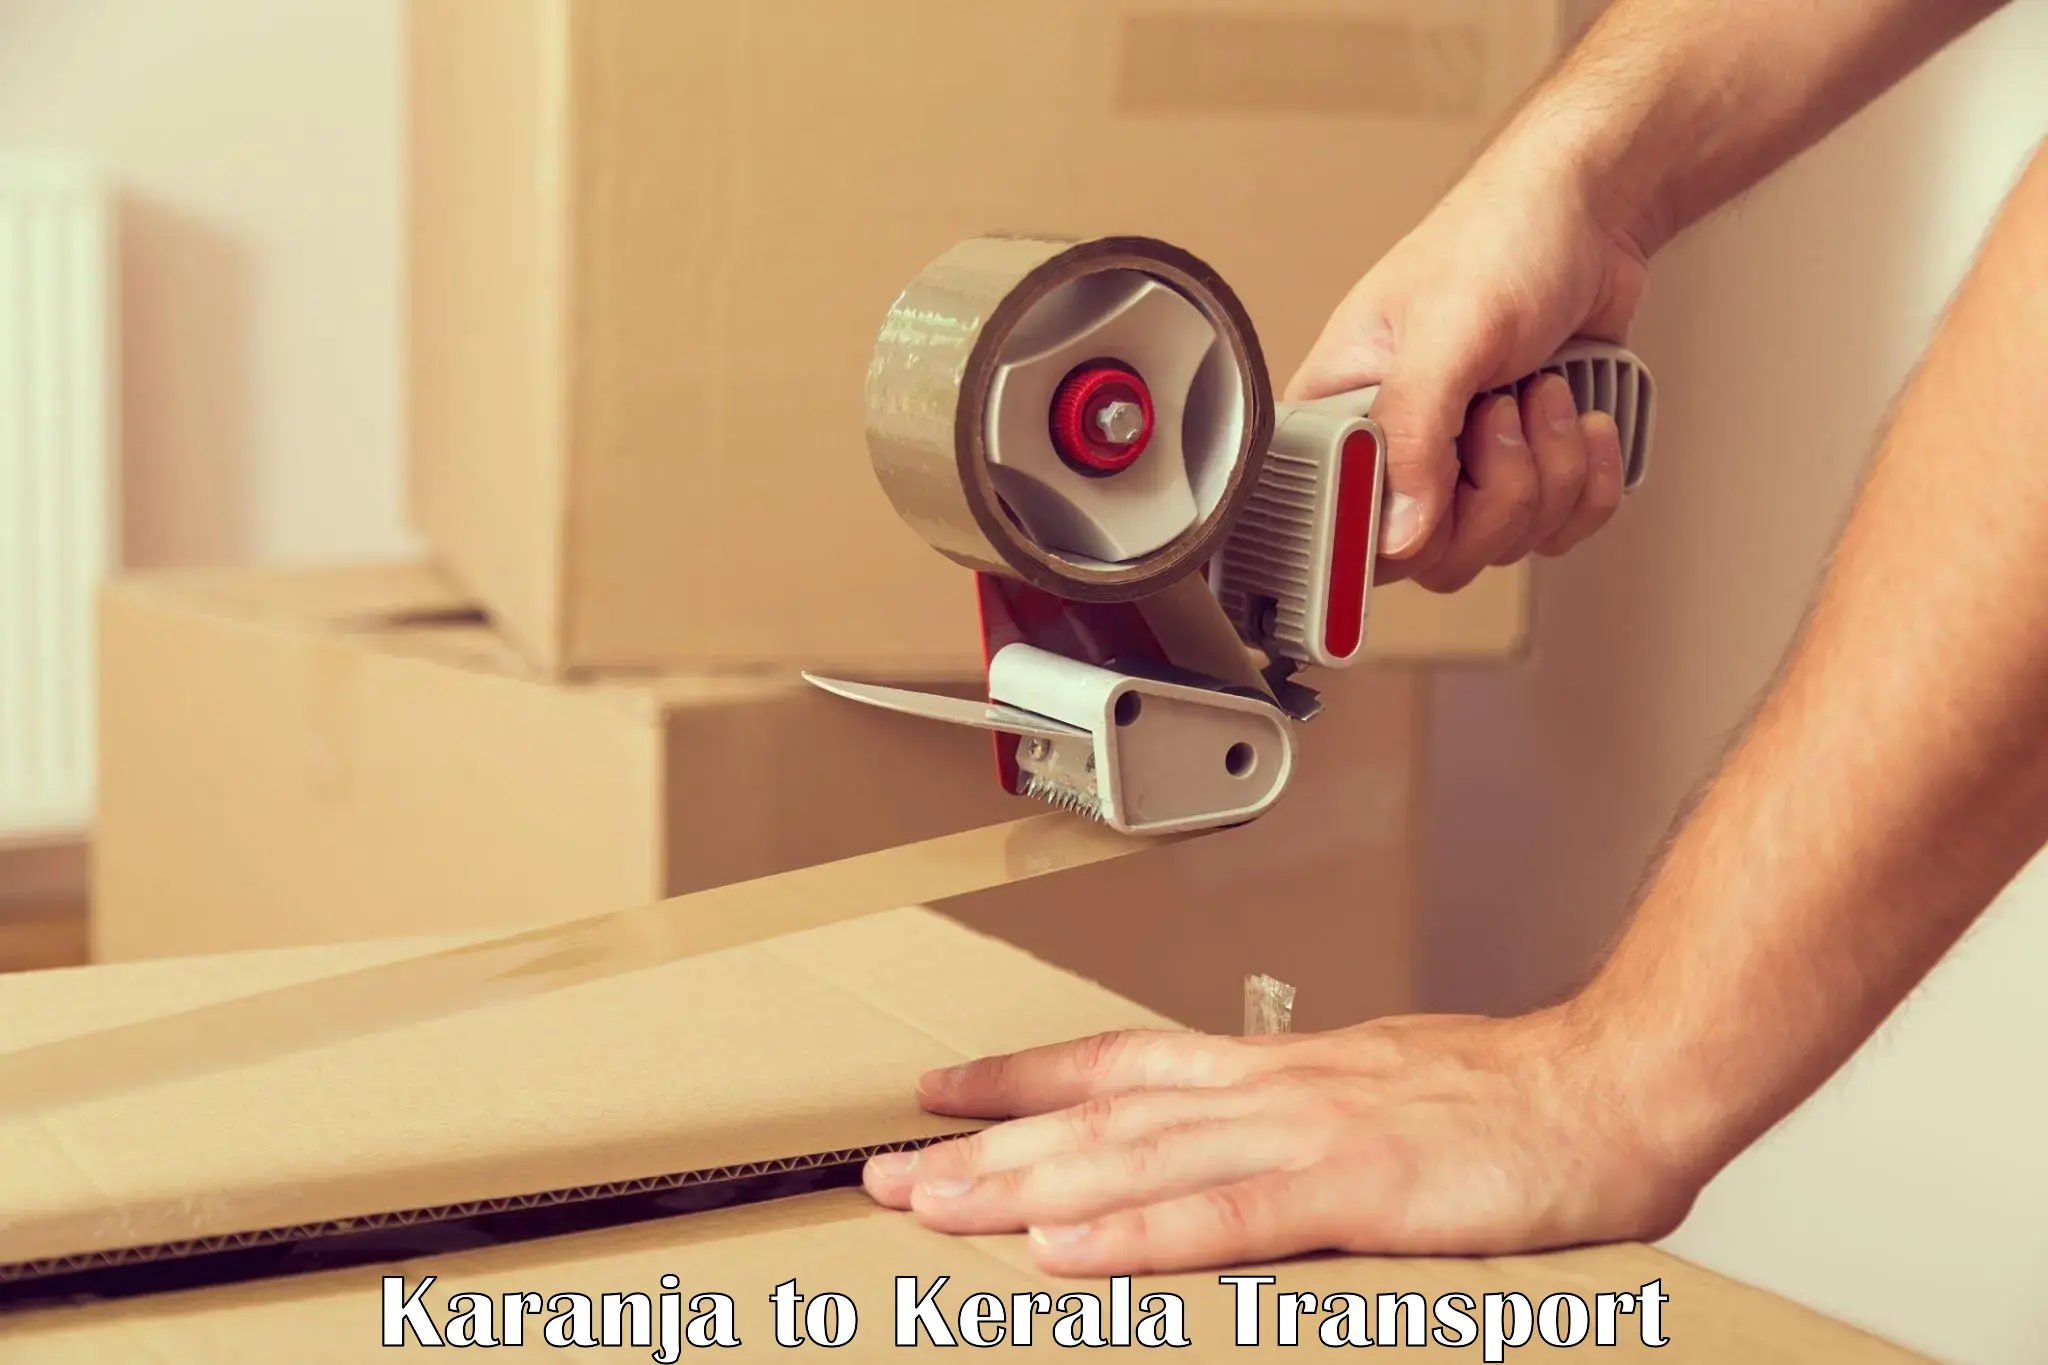 Logistics transportation services Karanja to Kayamkulam